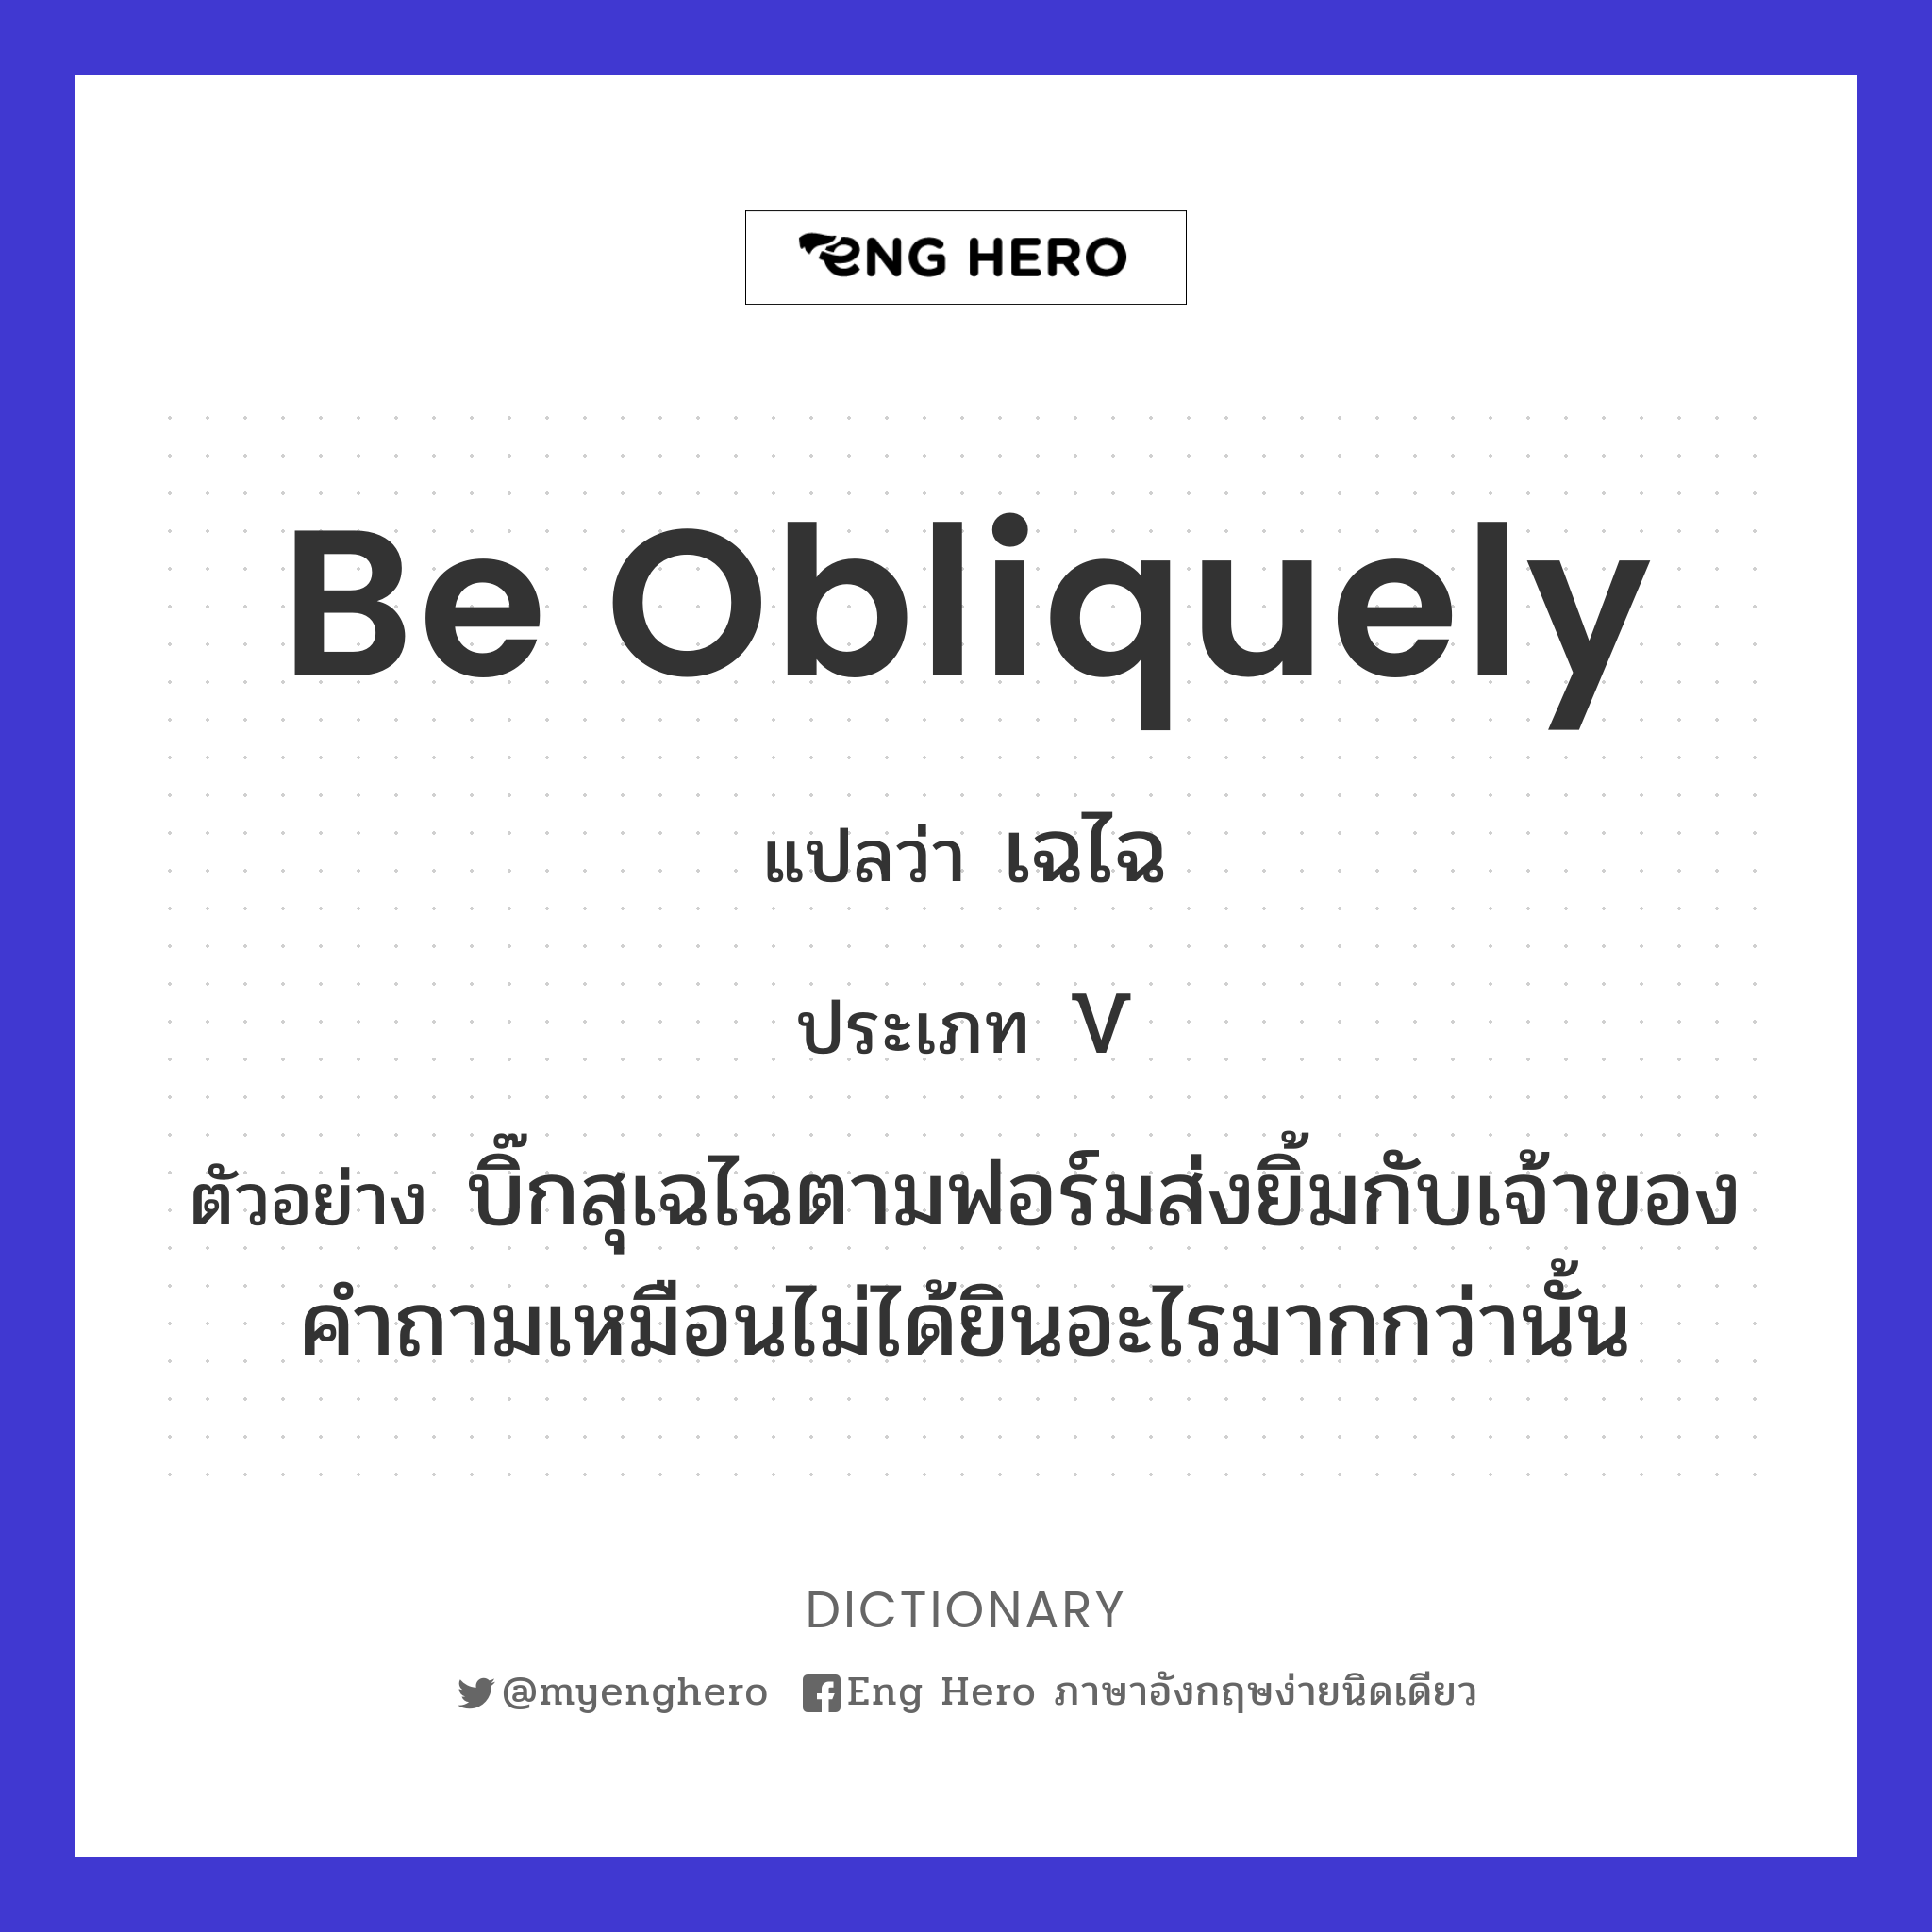 be obliquely